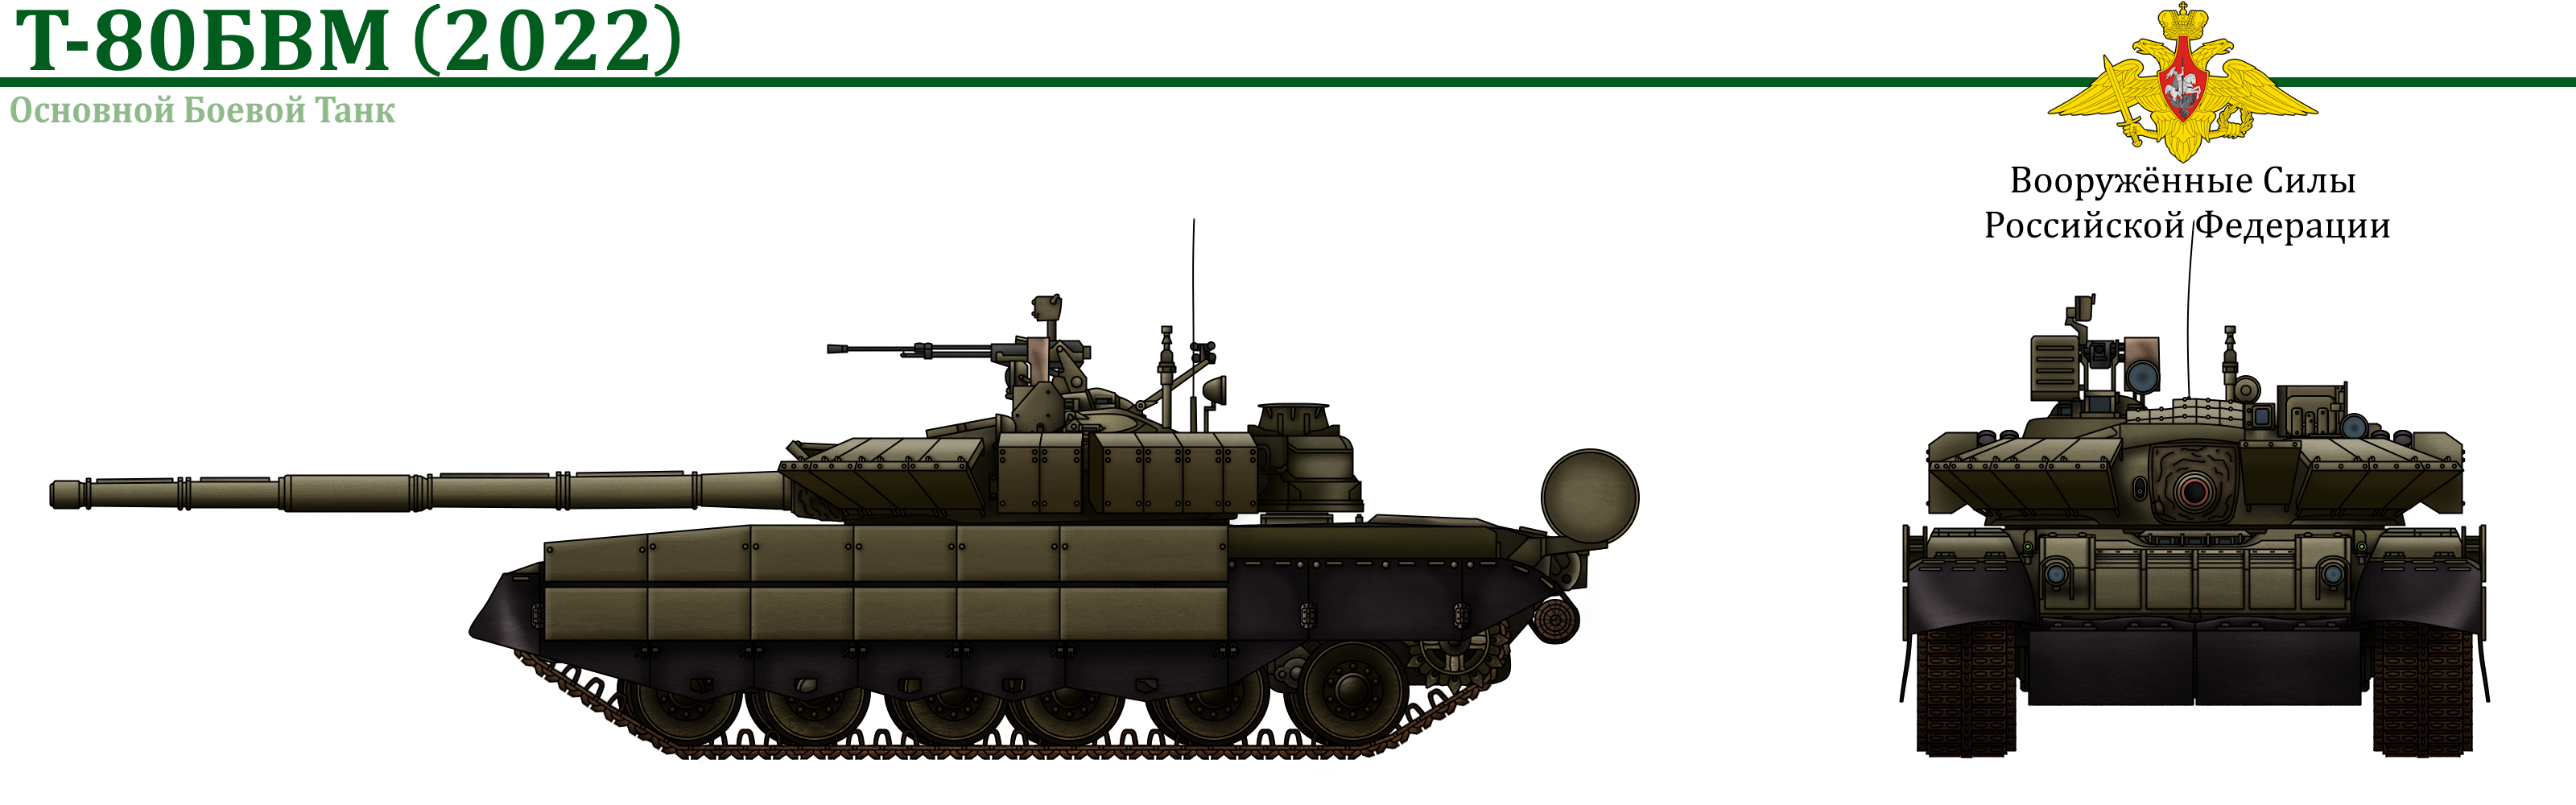 Все (почти) иллюстрации модификаций богоподобного танка Т-80